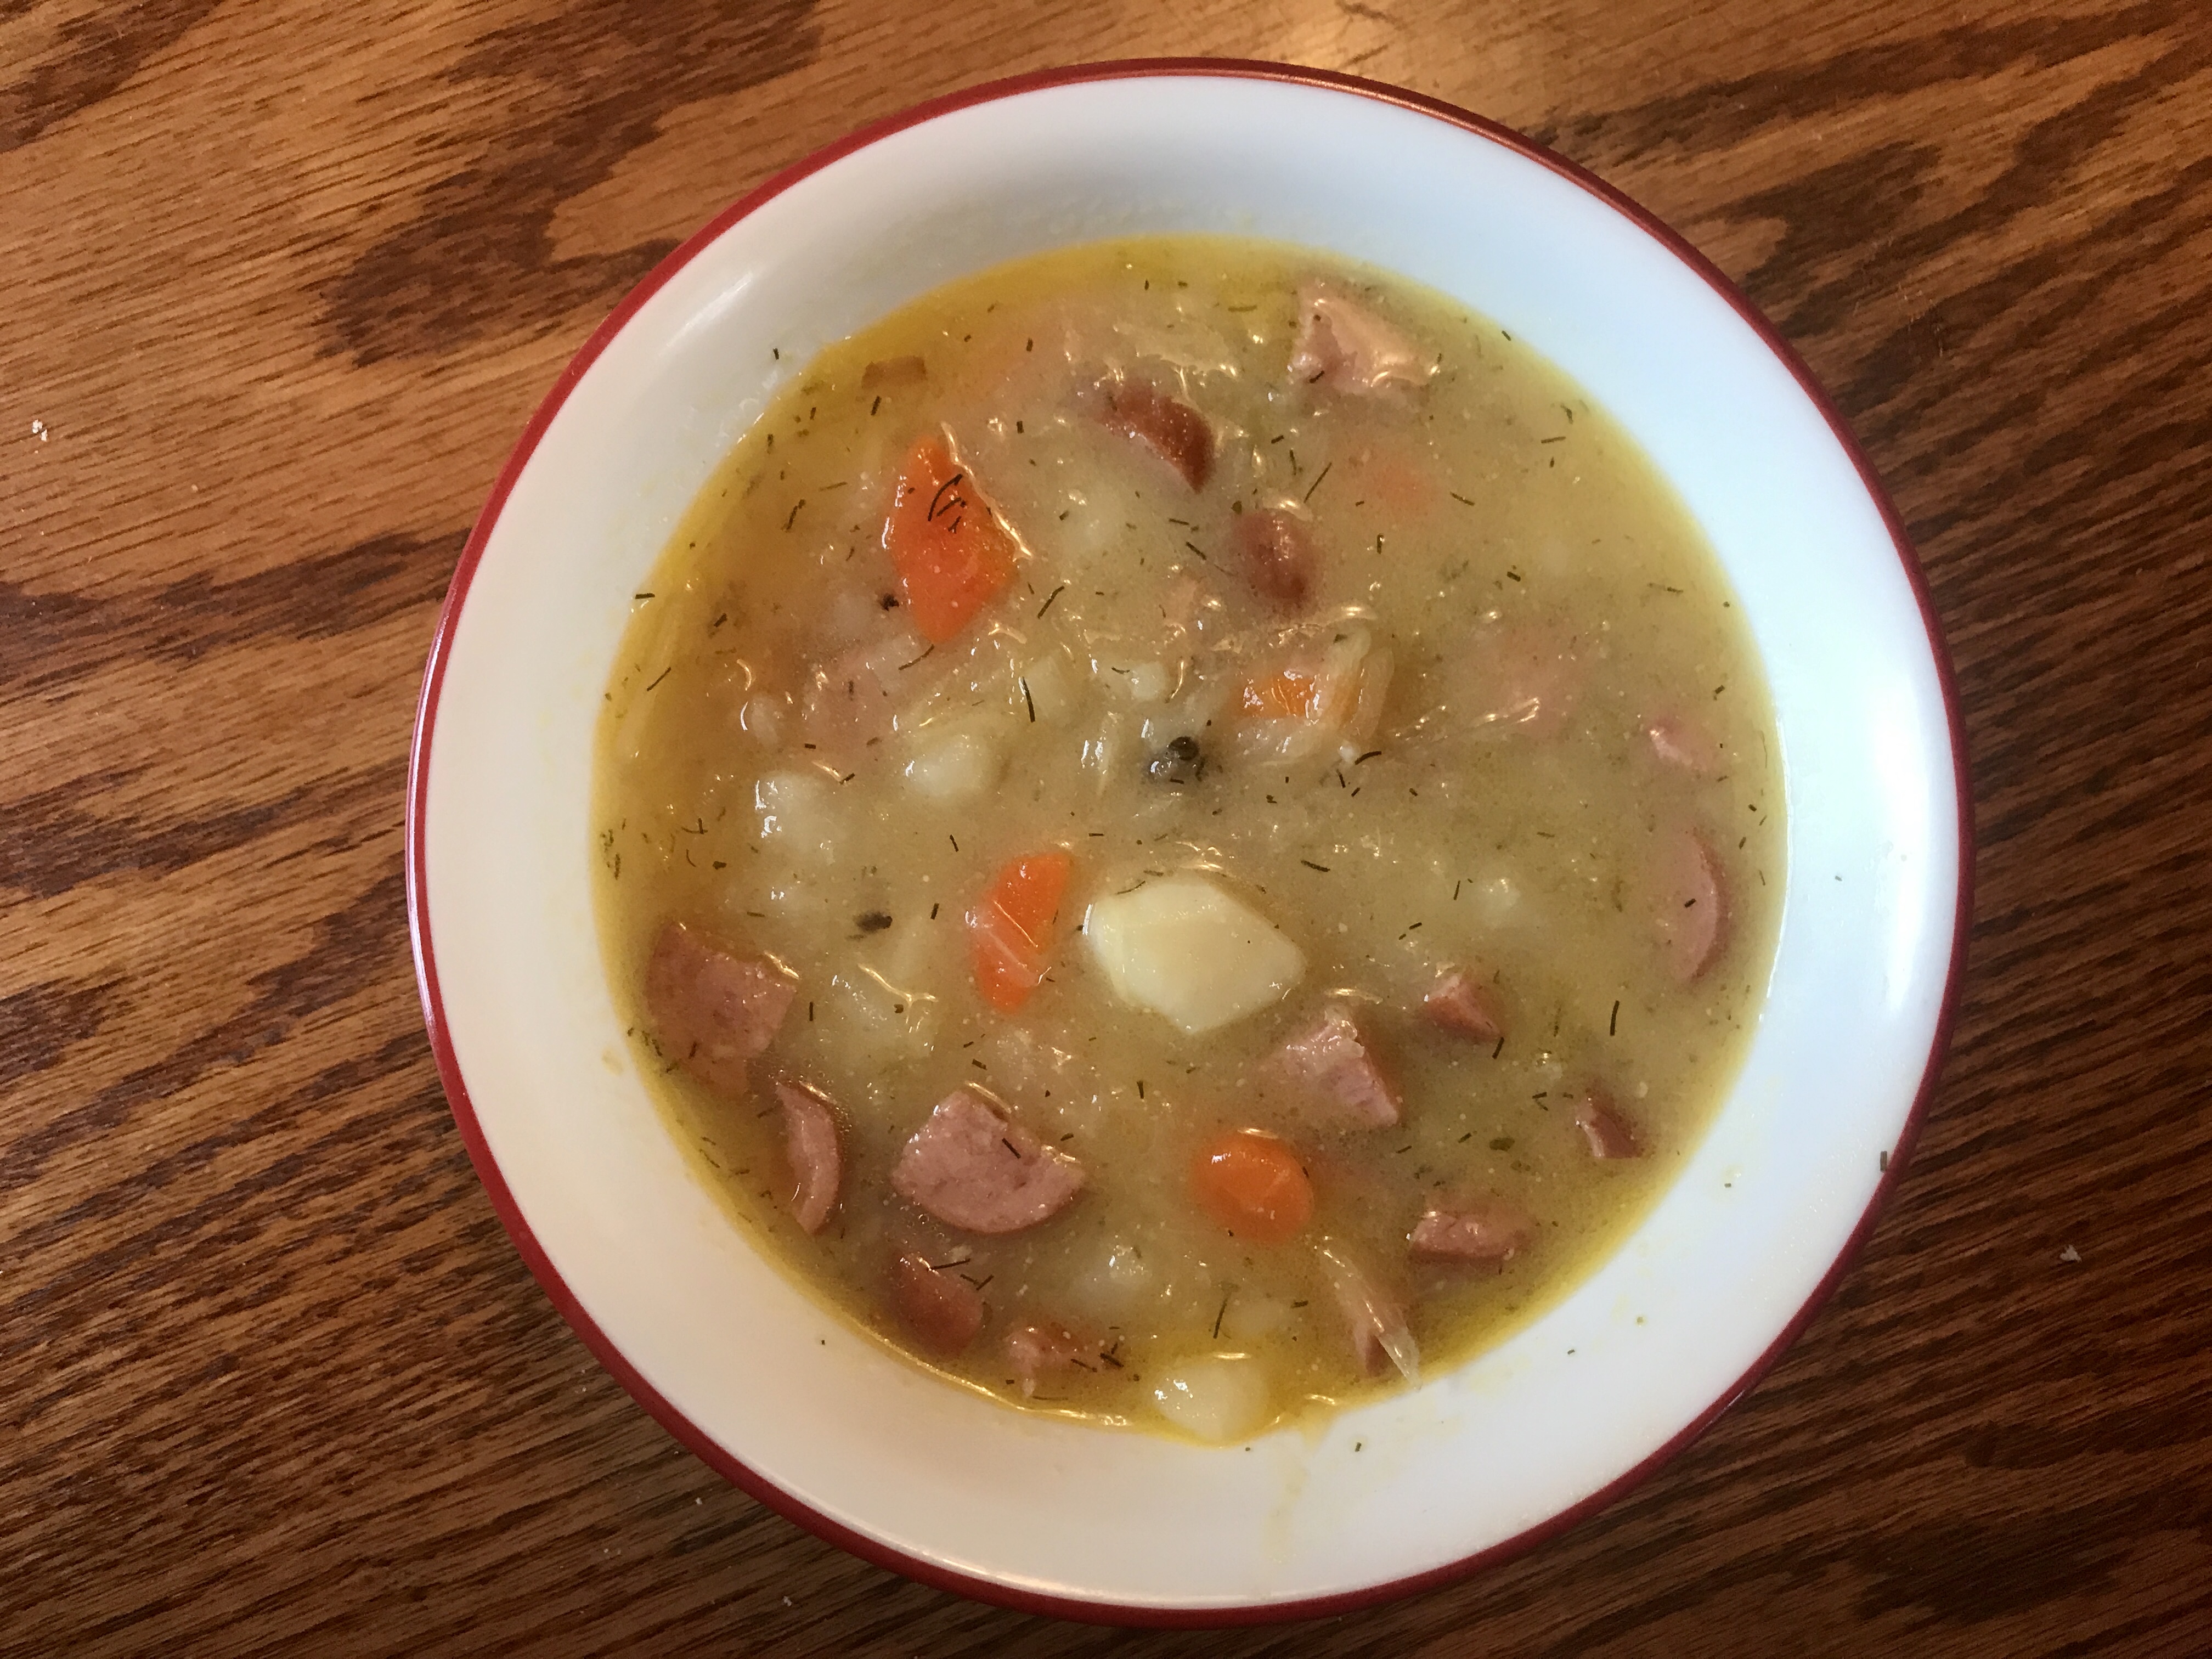 Sauerkraut Soup II